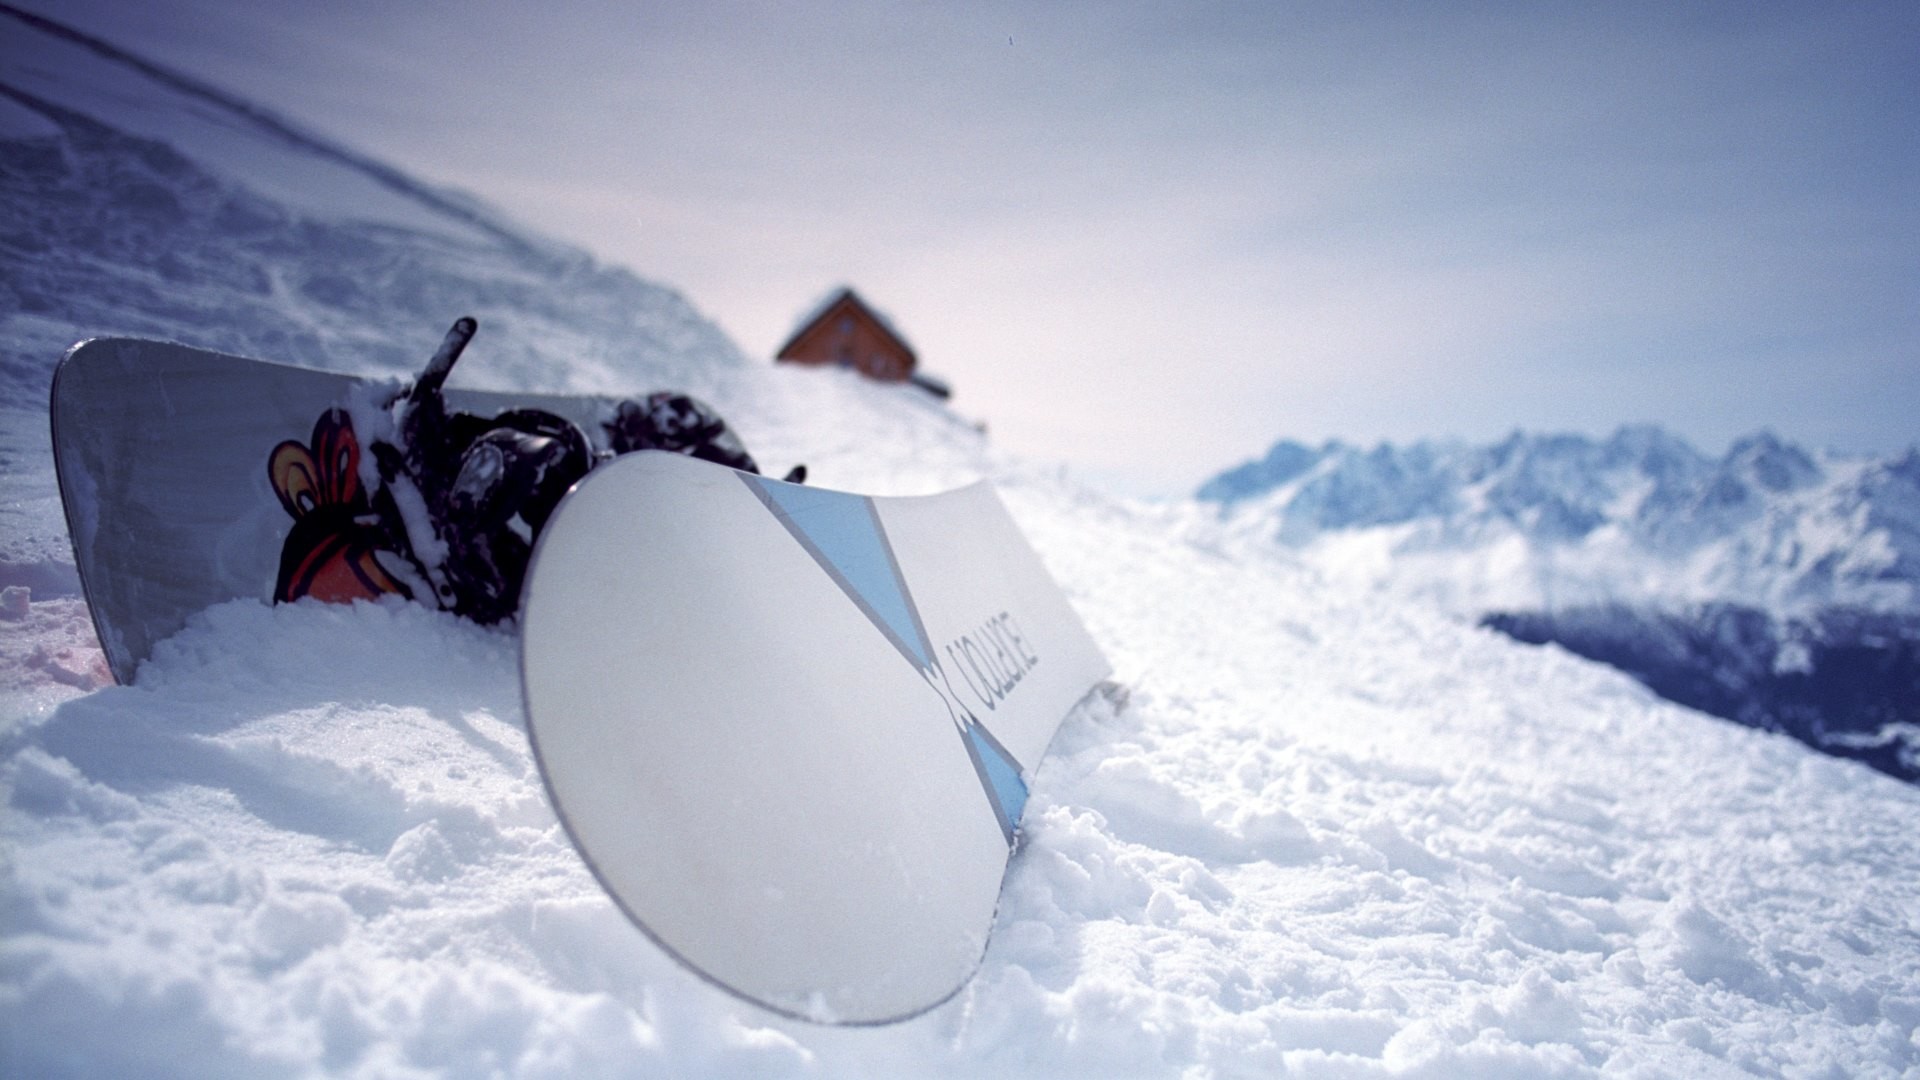 1920x1080 ÐÐ°ÑÑÐ¸Ð½ÐºÐ¸ Ð¿Ð¾ Ð·Ð°Ð¿ÑÐ¾ÑÑ snowboard wallpapers hd